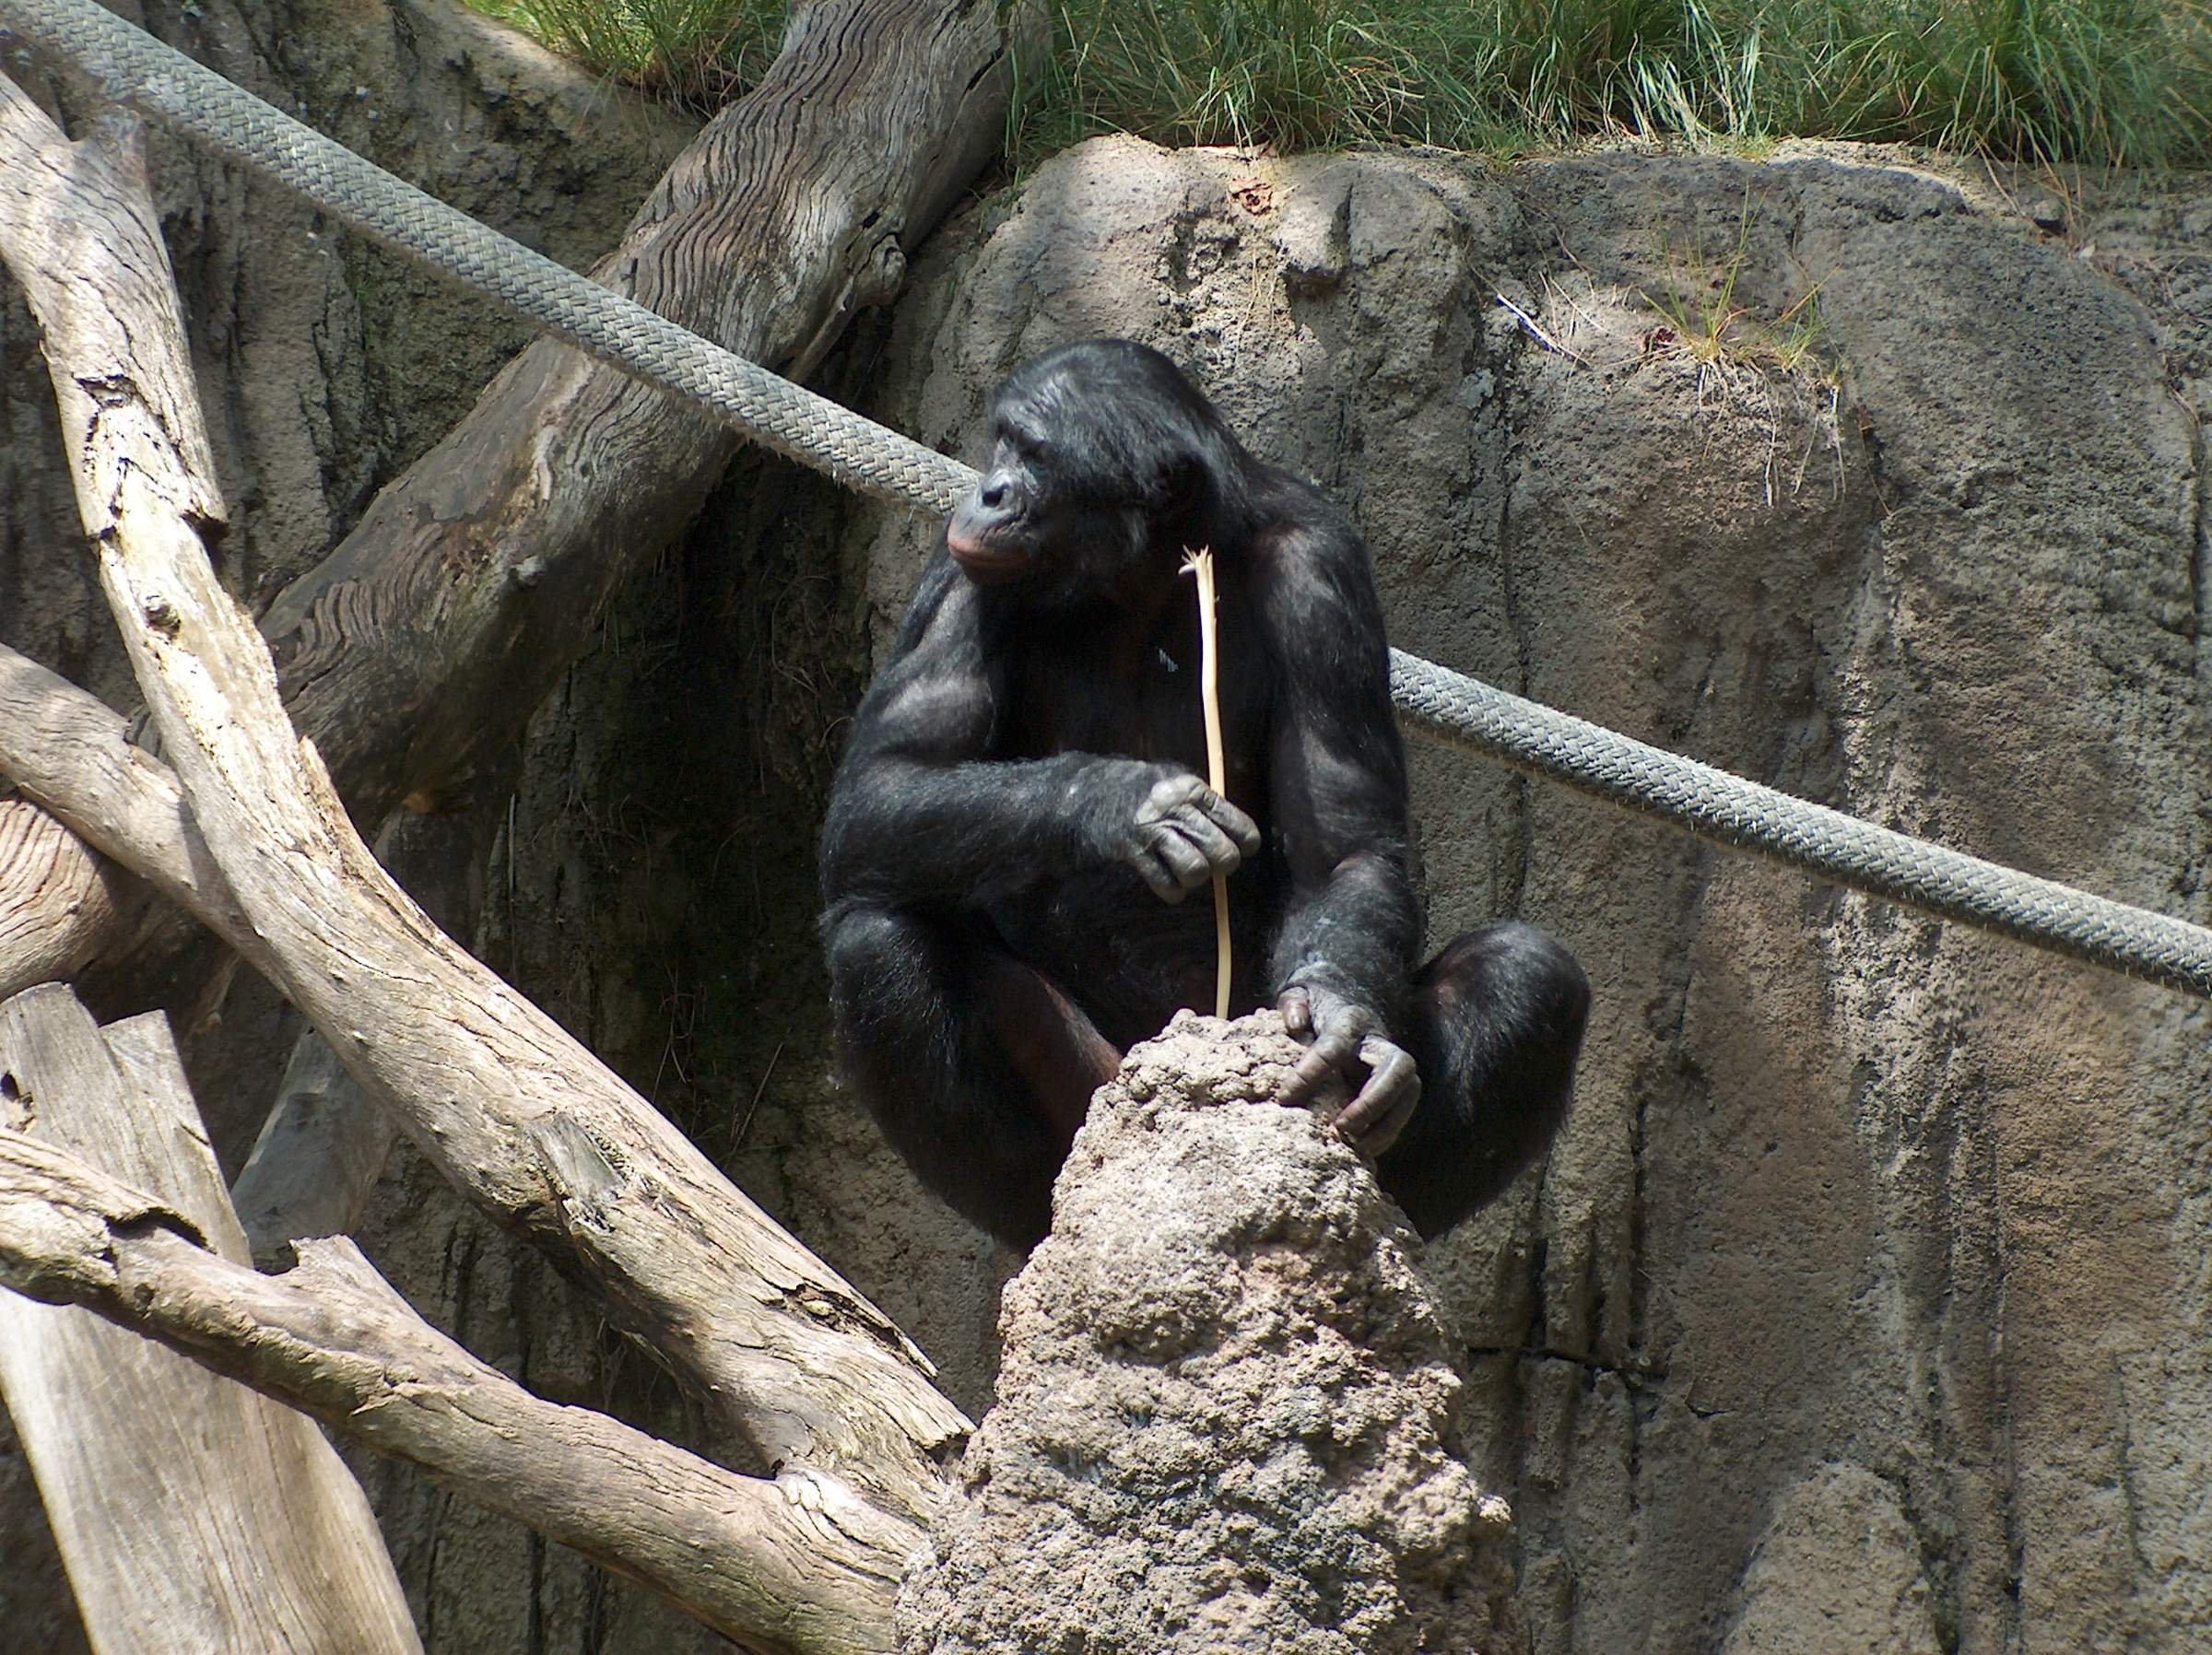 Деятельность человекообразных обезьян. Шимпанзе бонобо. Бонобо человекообразные обезьяны. Орудийная деятельность шимпанзе. Примат с палкой.